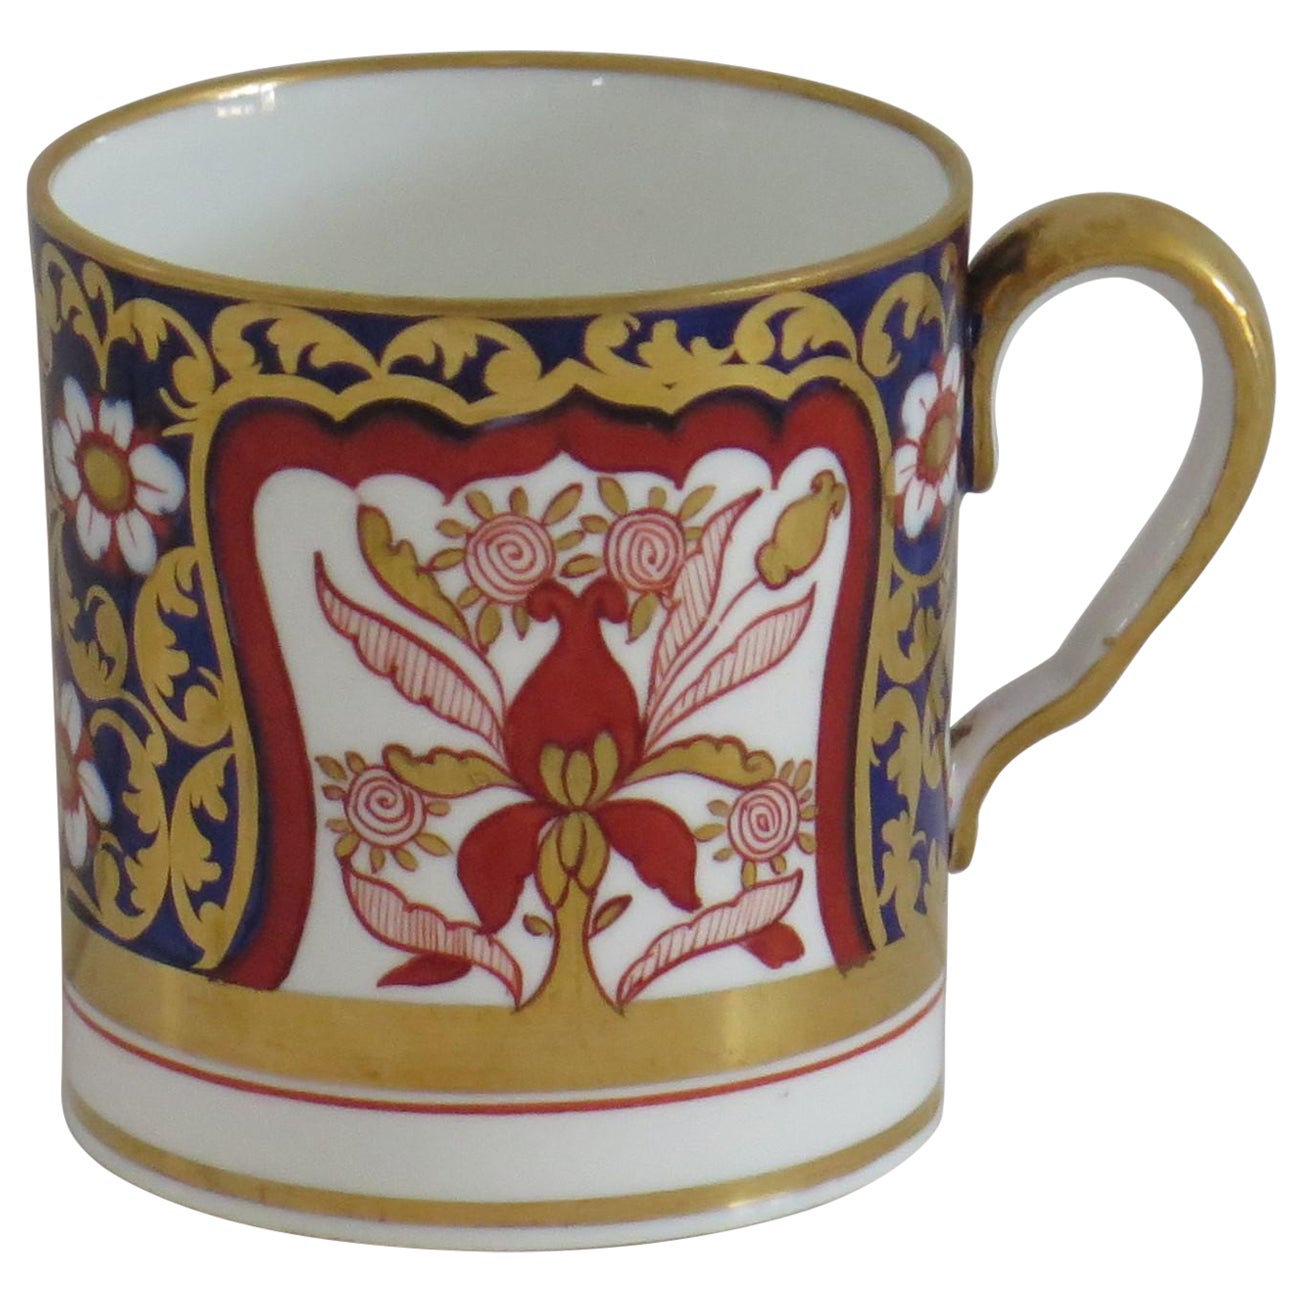 Porzellan-Kaffeekannen „Spode“ von Copeland, fein von Hand bemalt und vergoldet, um 1860